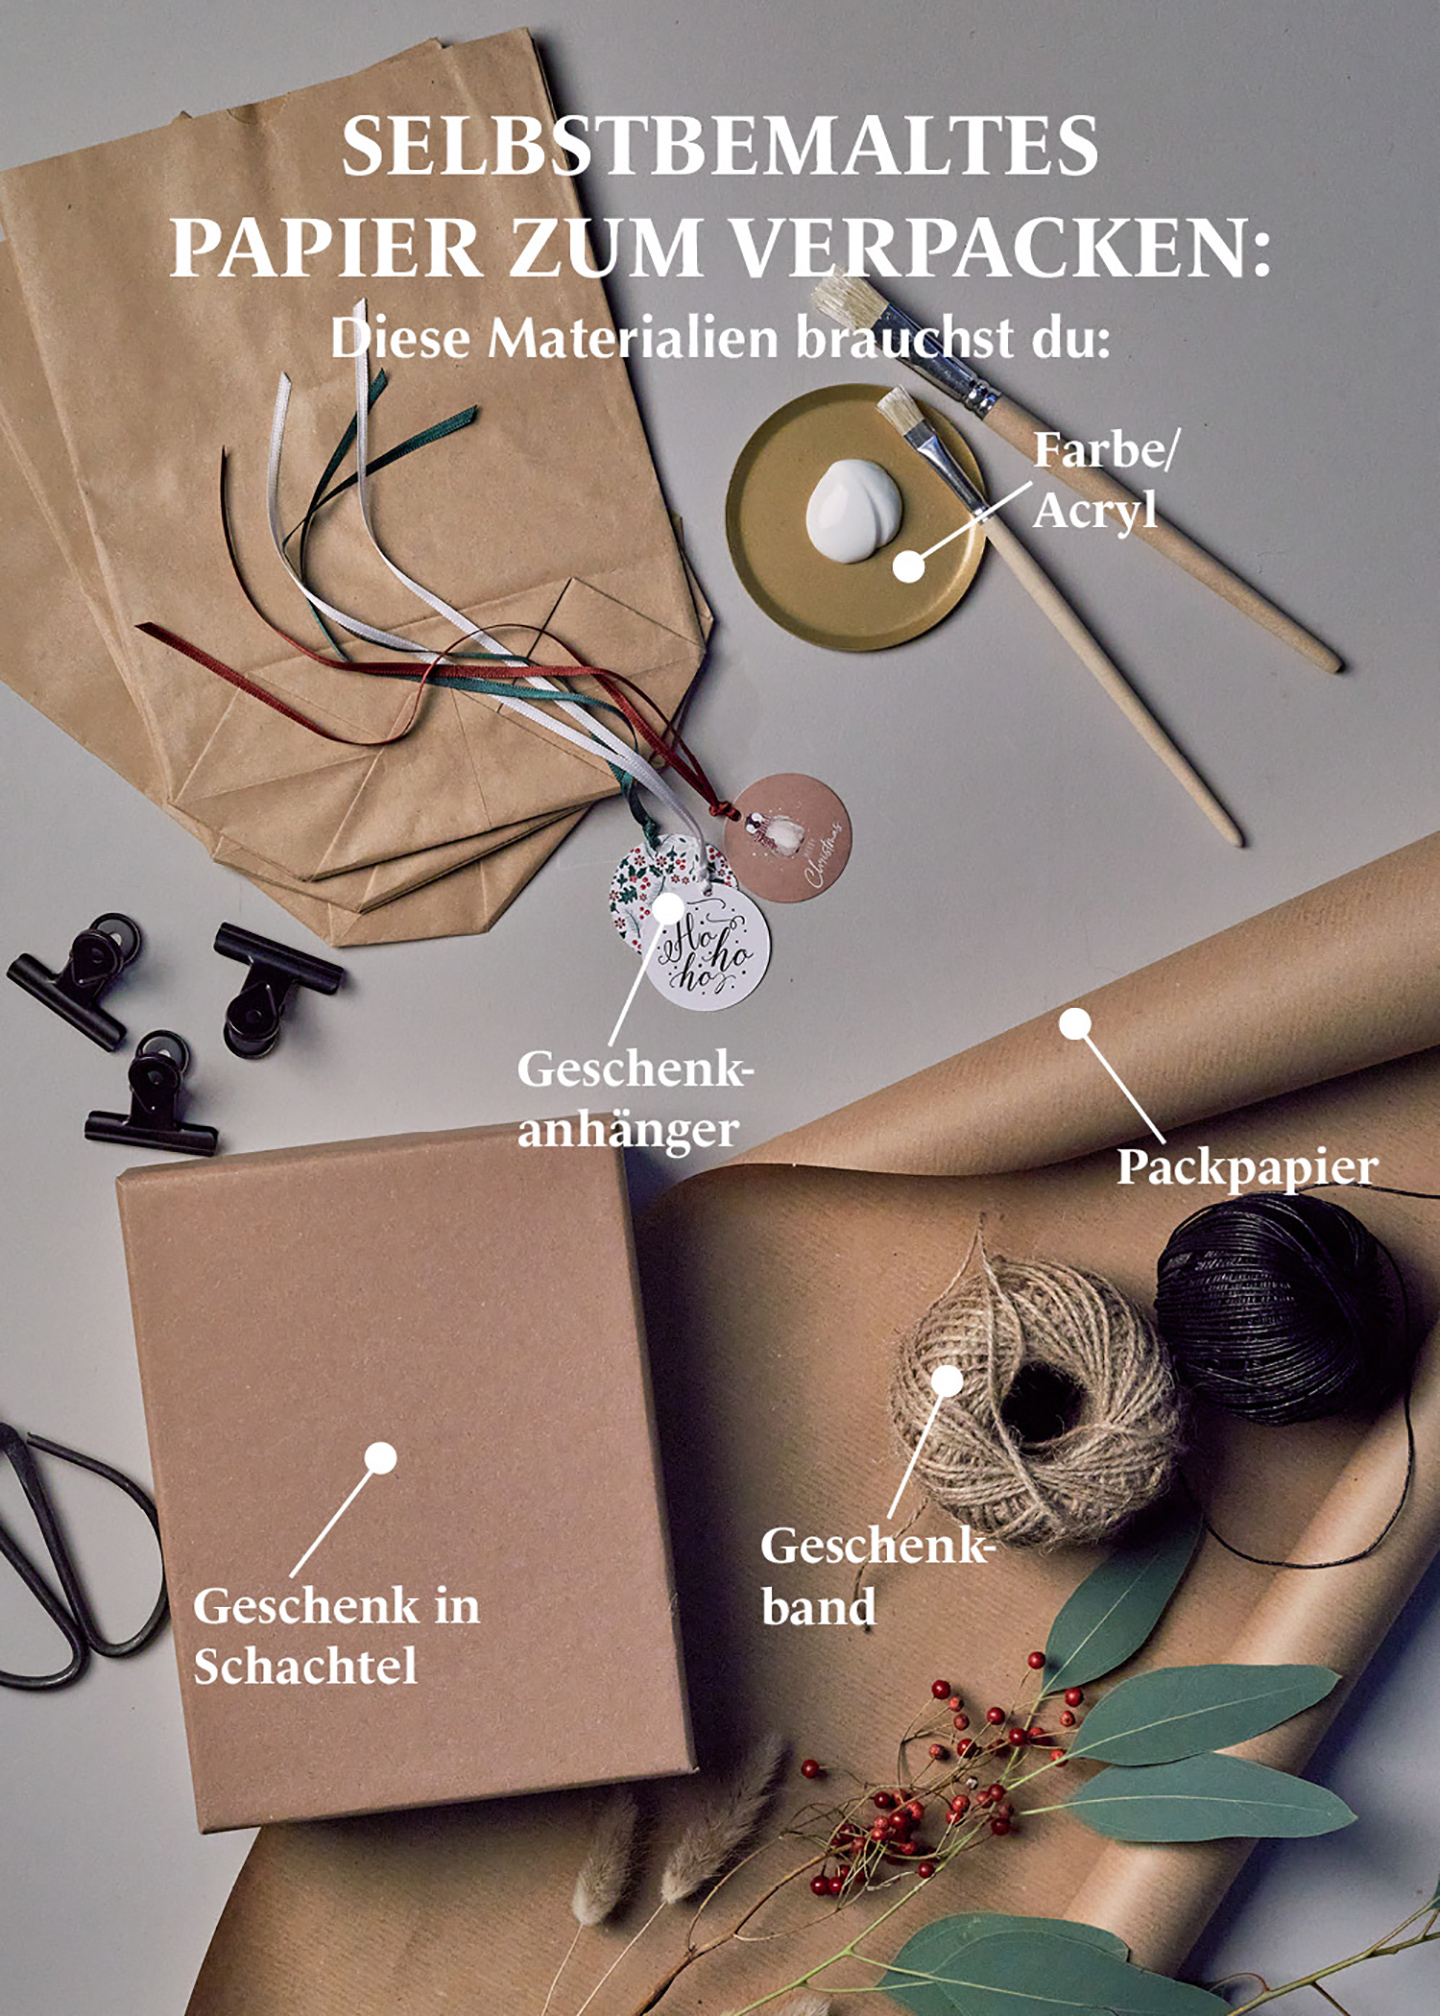 DIY Geschenkpapier selbstbemalen: Anleitung, Materialien erklärt.